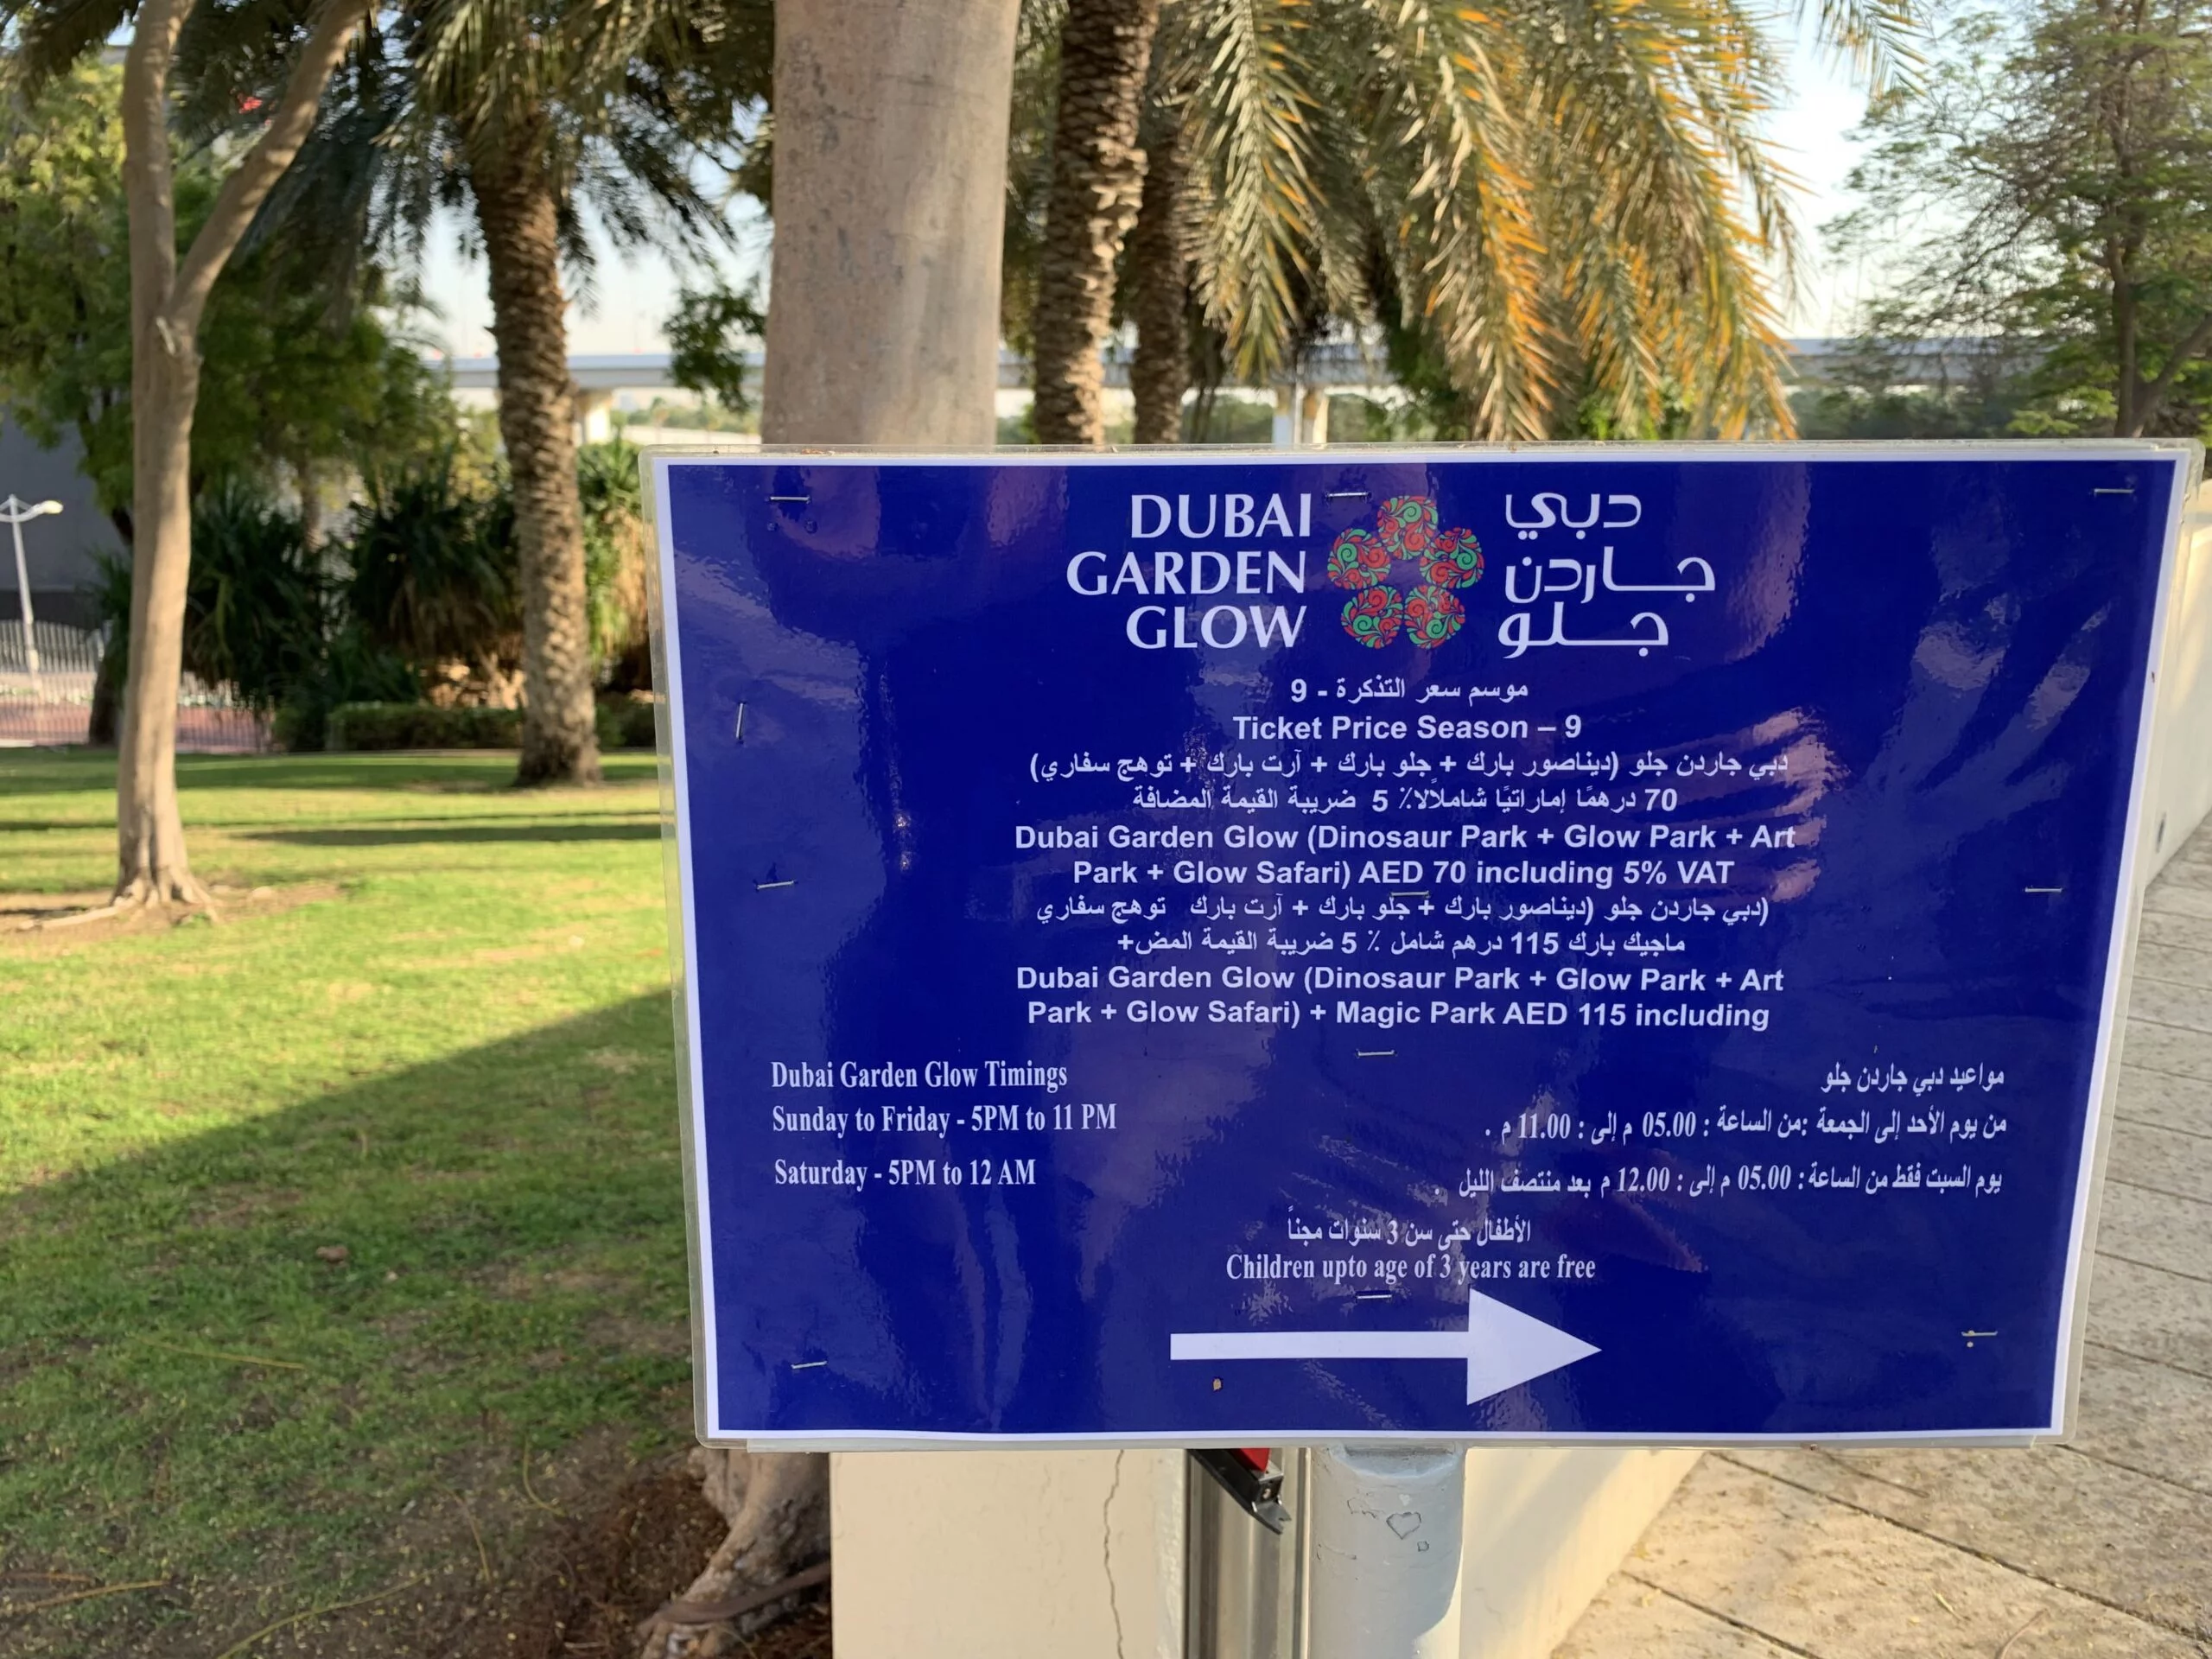 Dubai Garden Glow and Dinosaur Park Ticket Price